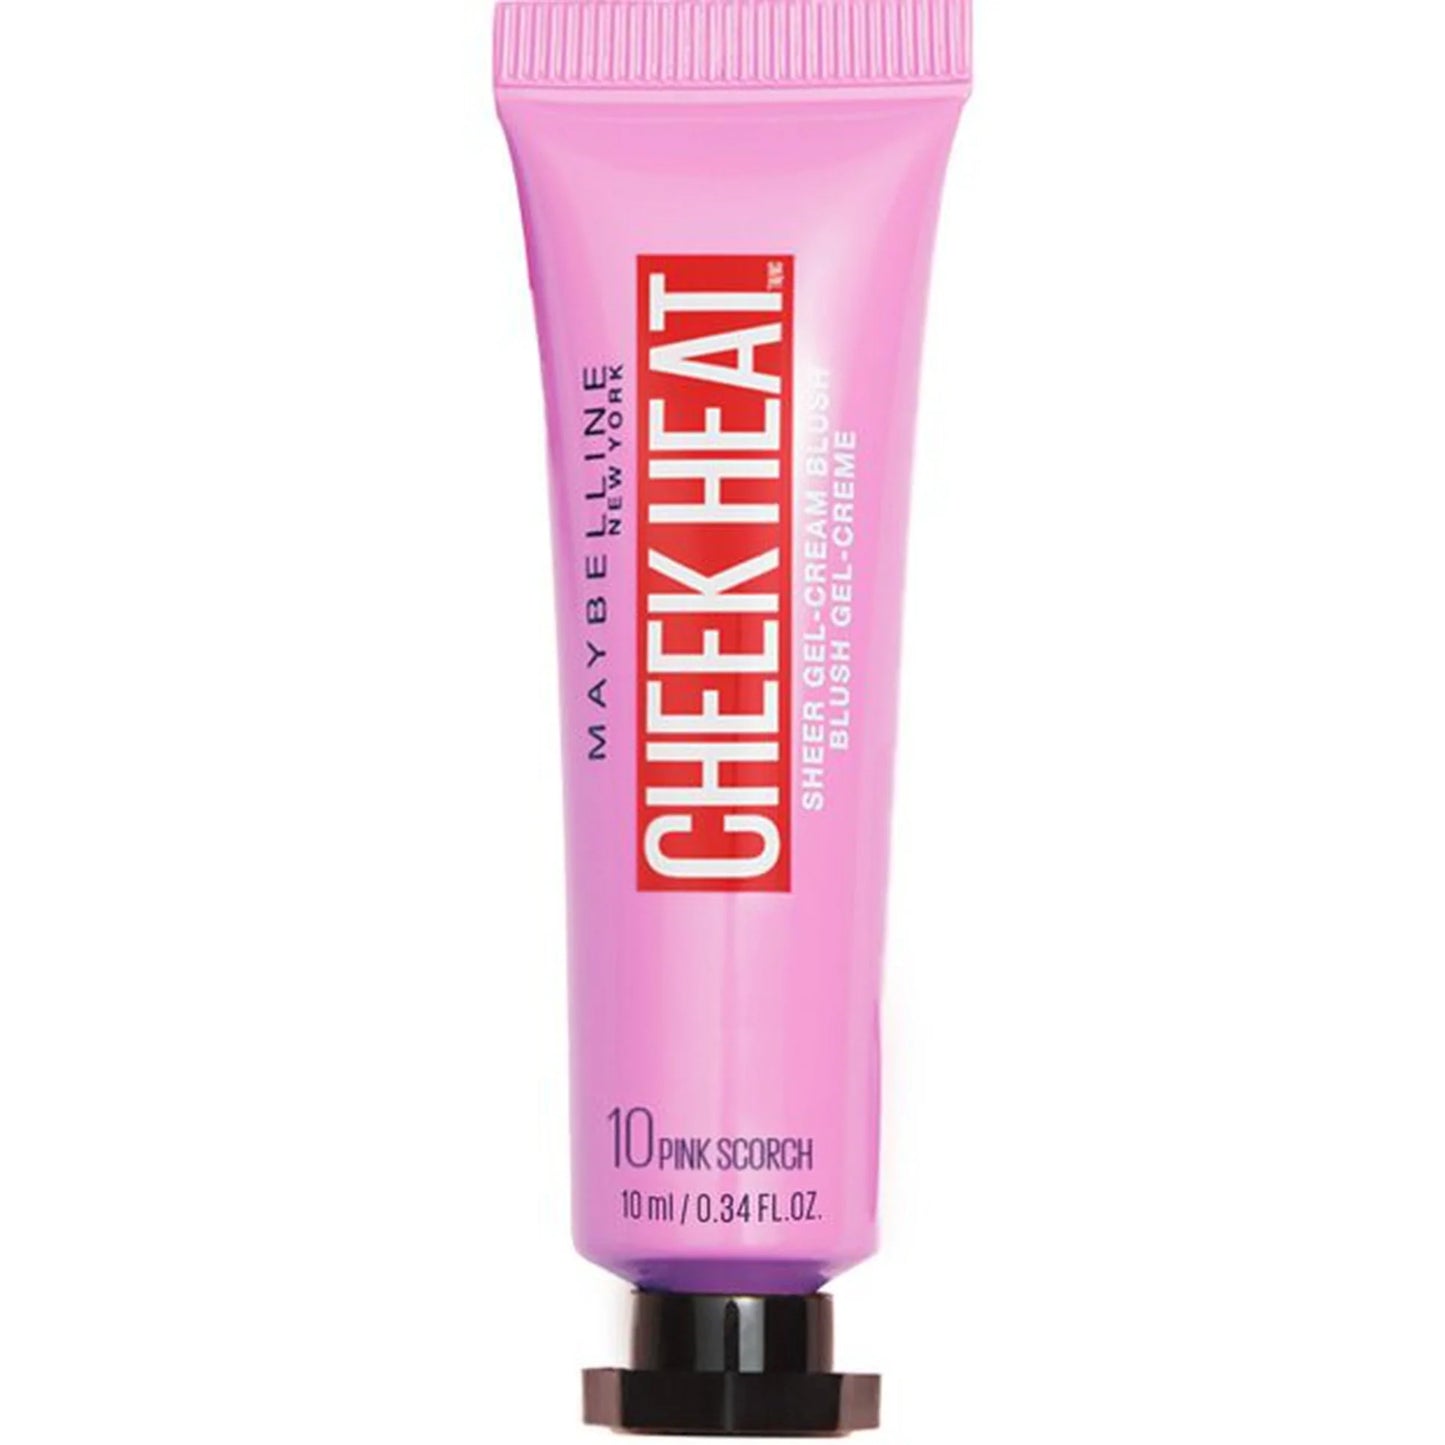 Maybelline Cheek Heat Sheer Gel-Cream Blush - 10 Pink Scorch